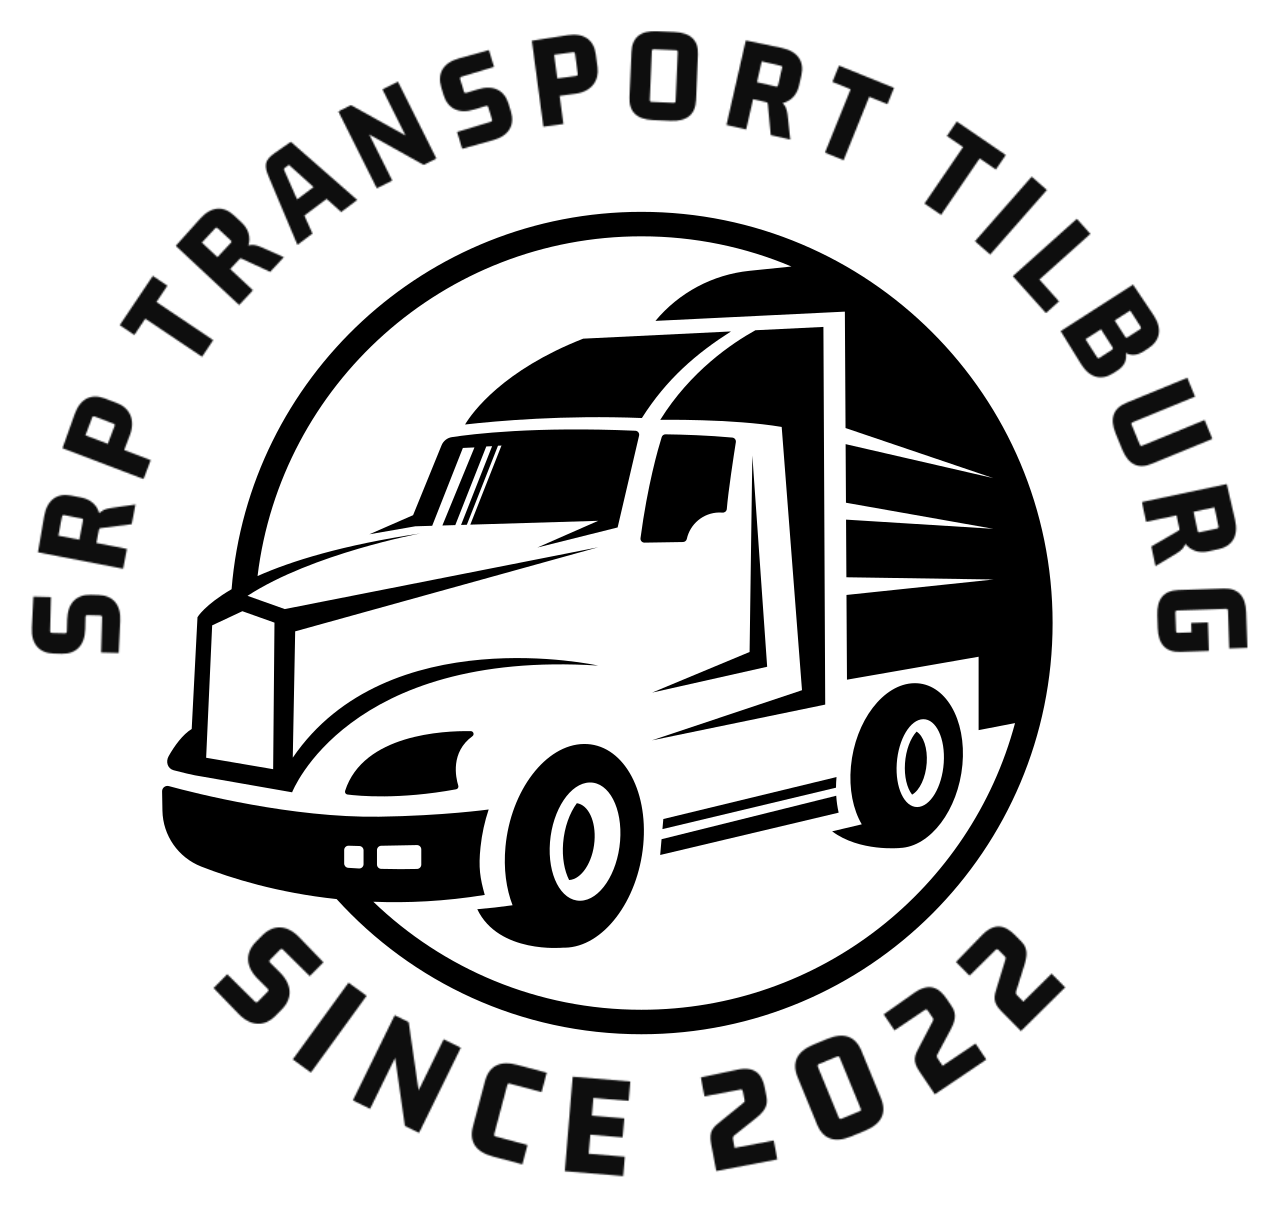 SRP Transport Tilburg's web page